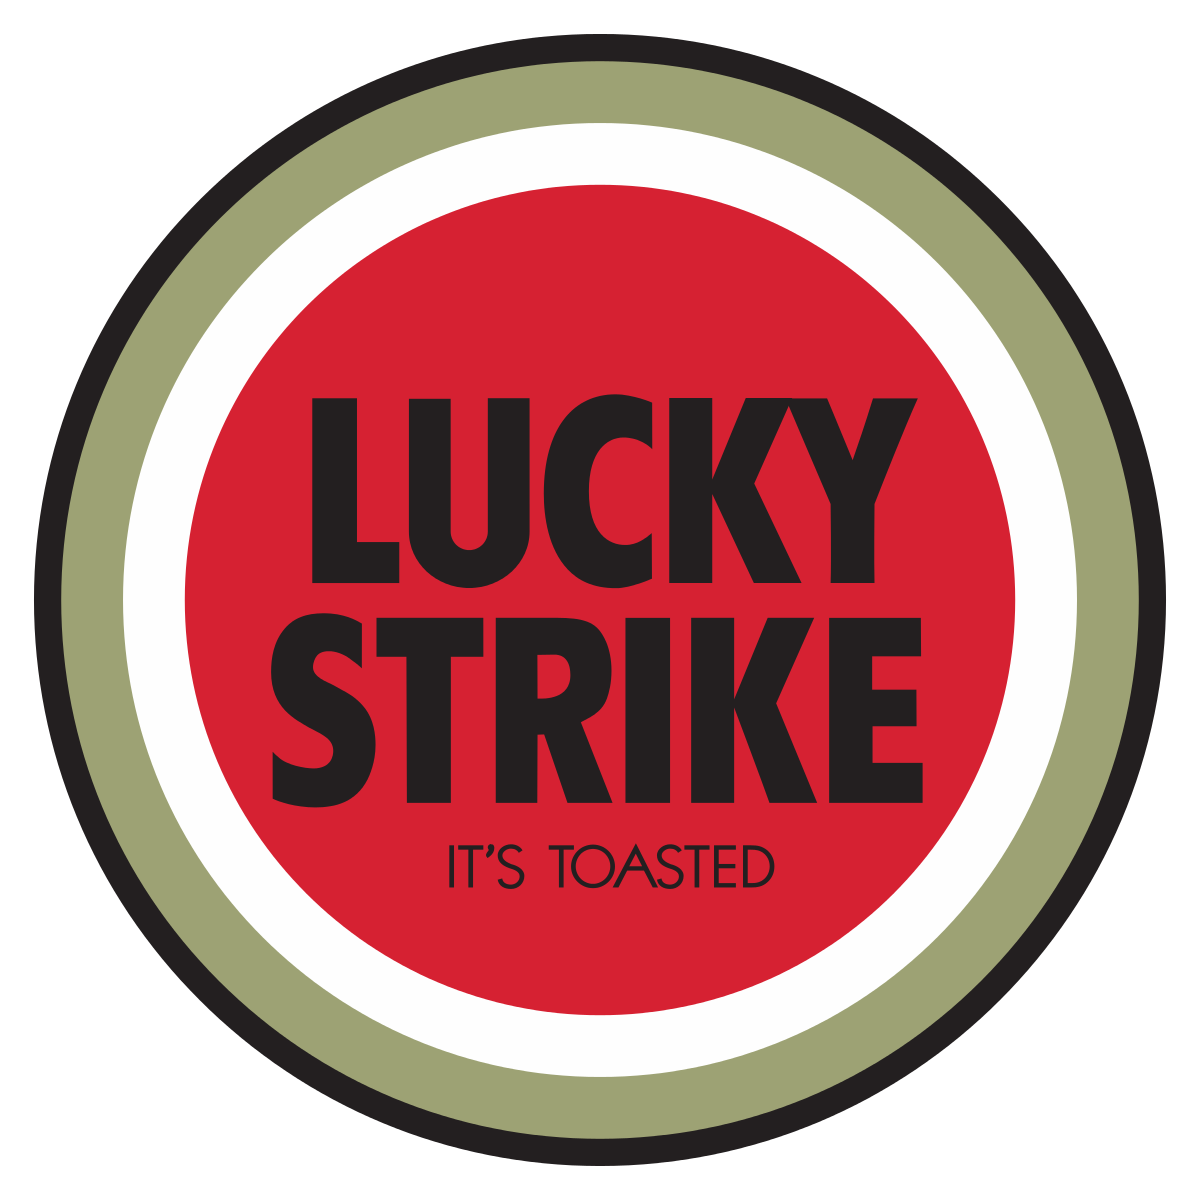 ¡Suerte Asegurada en Lucky Strike!